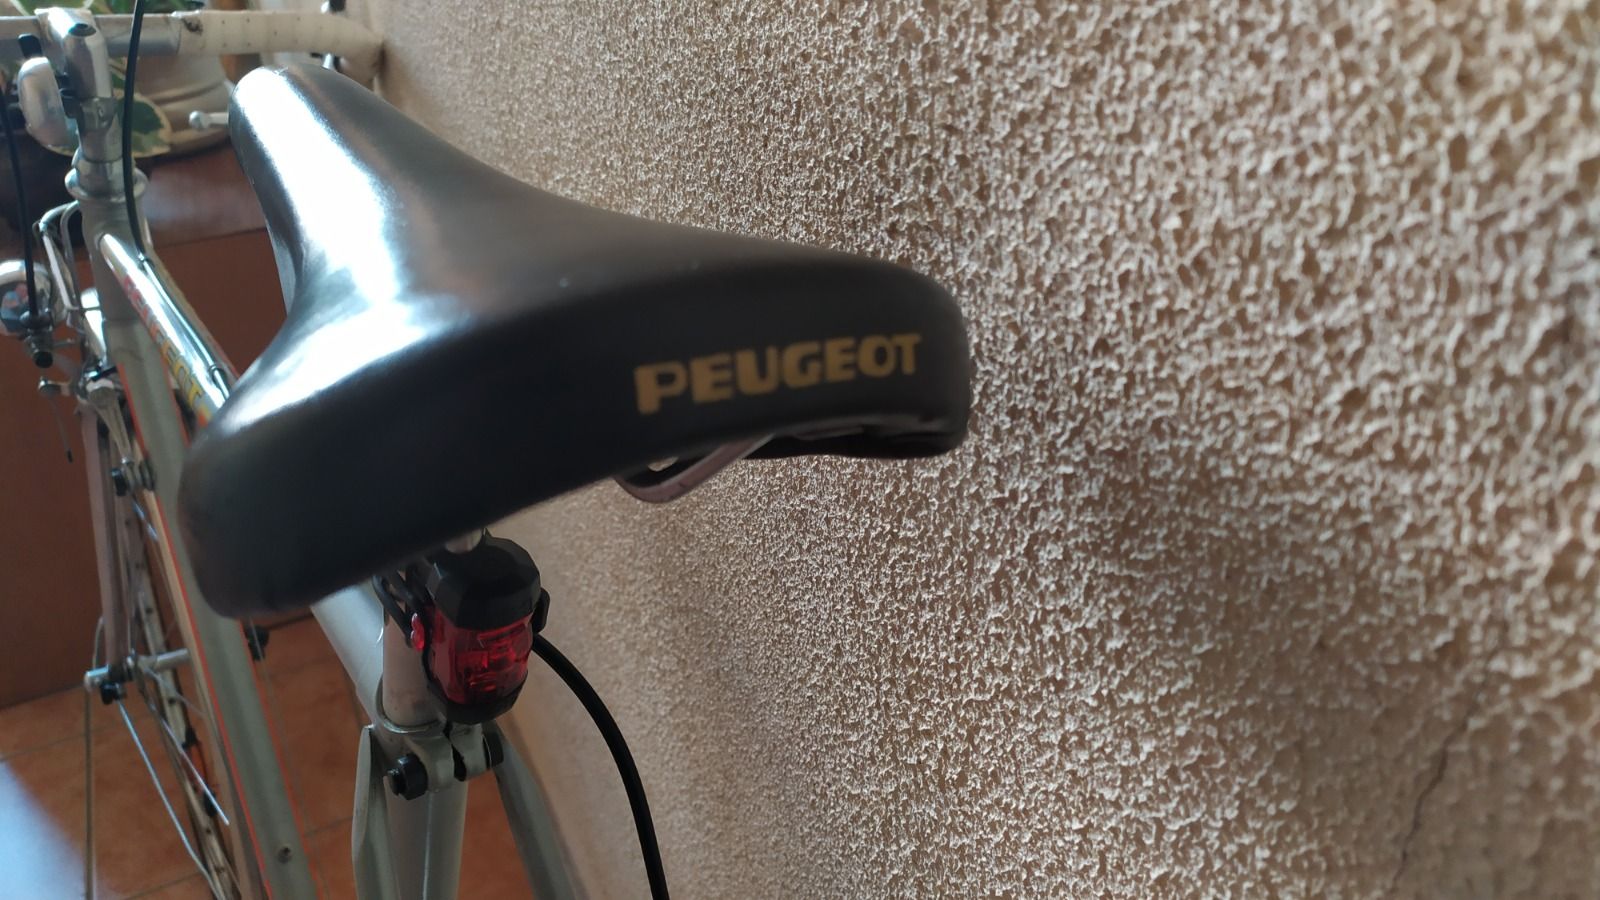 Велосипед Peugeot